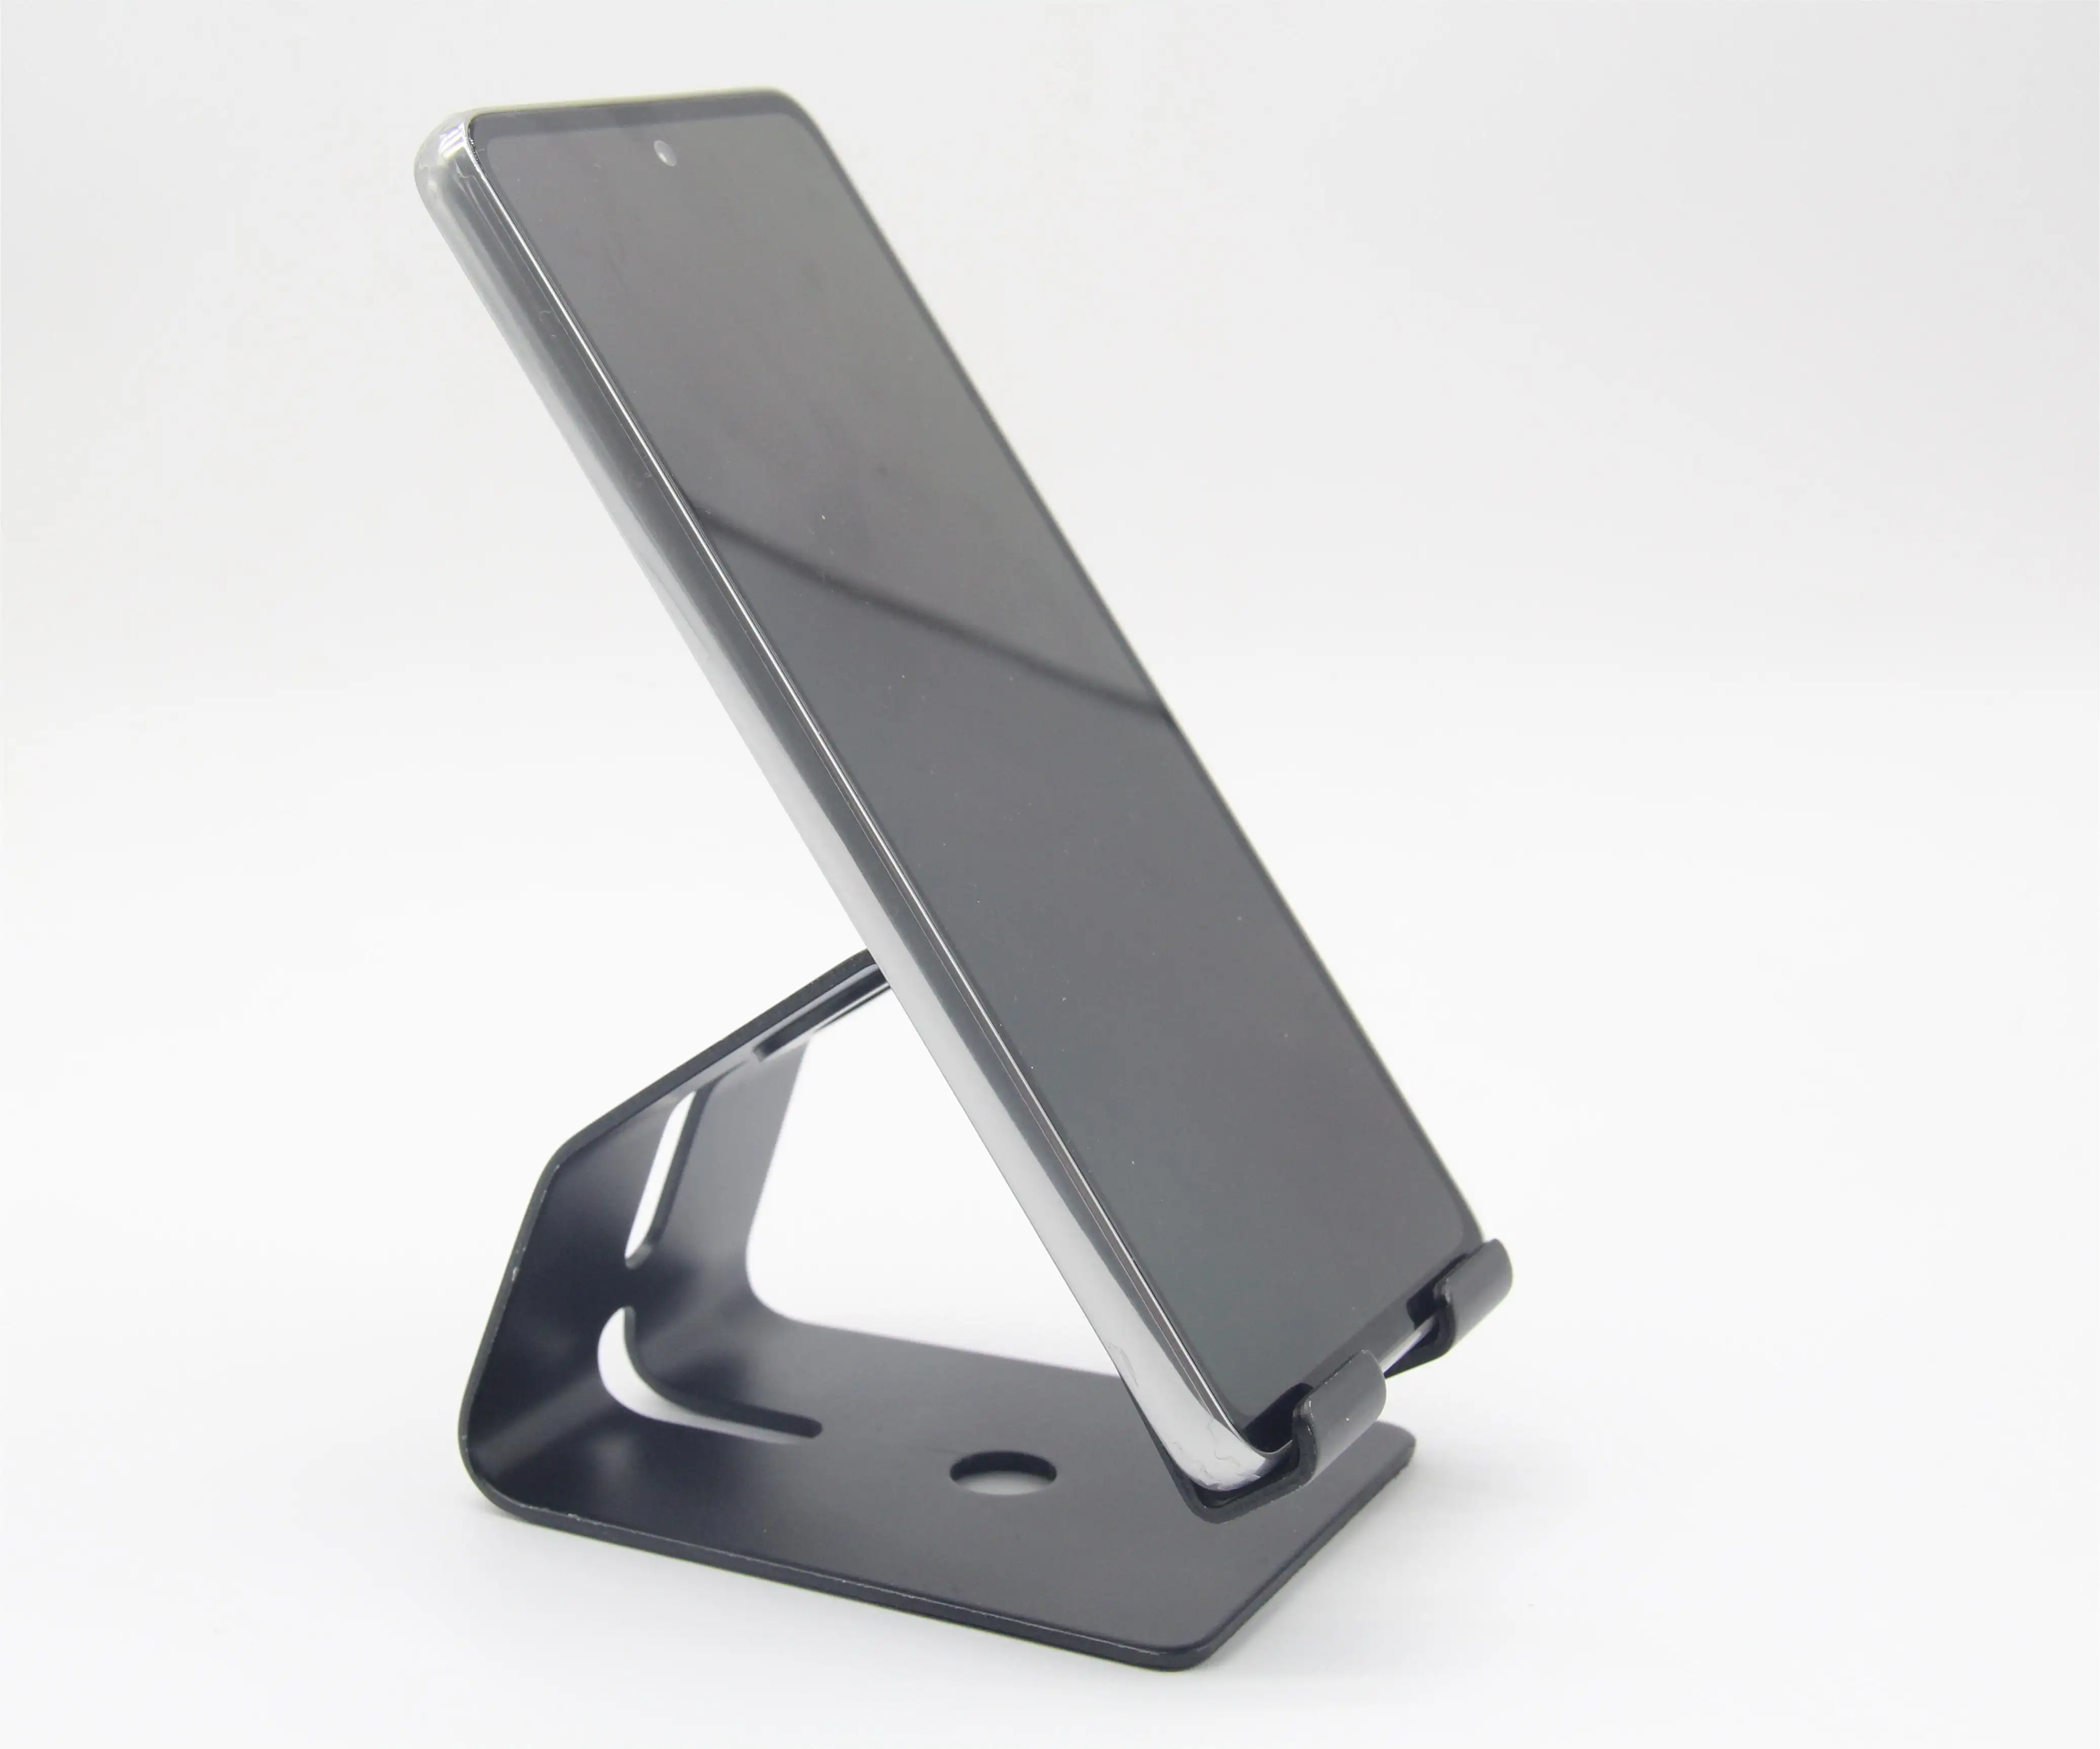 Suporte de celular de liga de alumínio, preço mais baixo, ajustável, suporte de celular, dobrável, usado para allphone